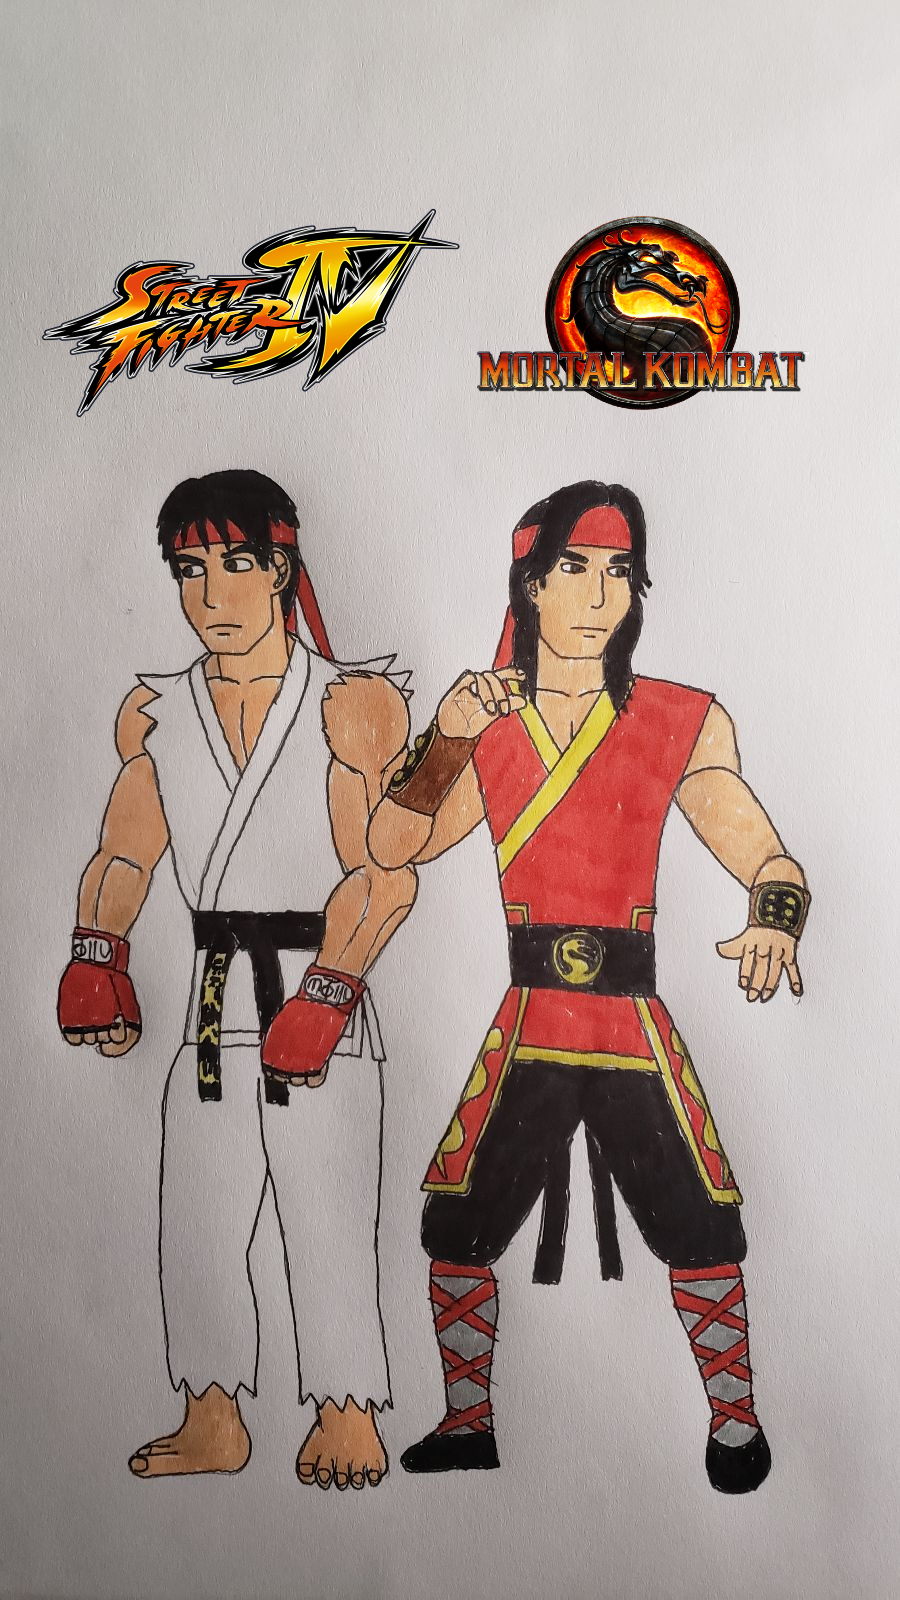 Street Fighter vs. Mortal Kombat by RyuKangLivesAgain on DeviantArt